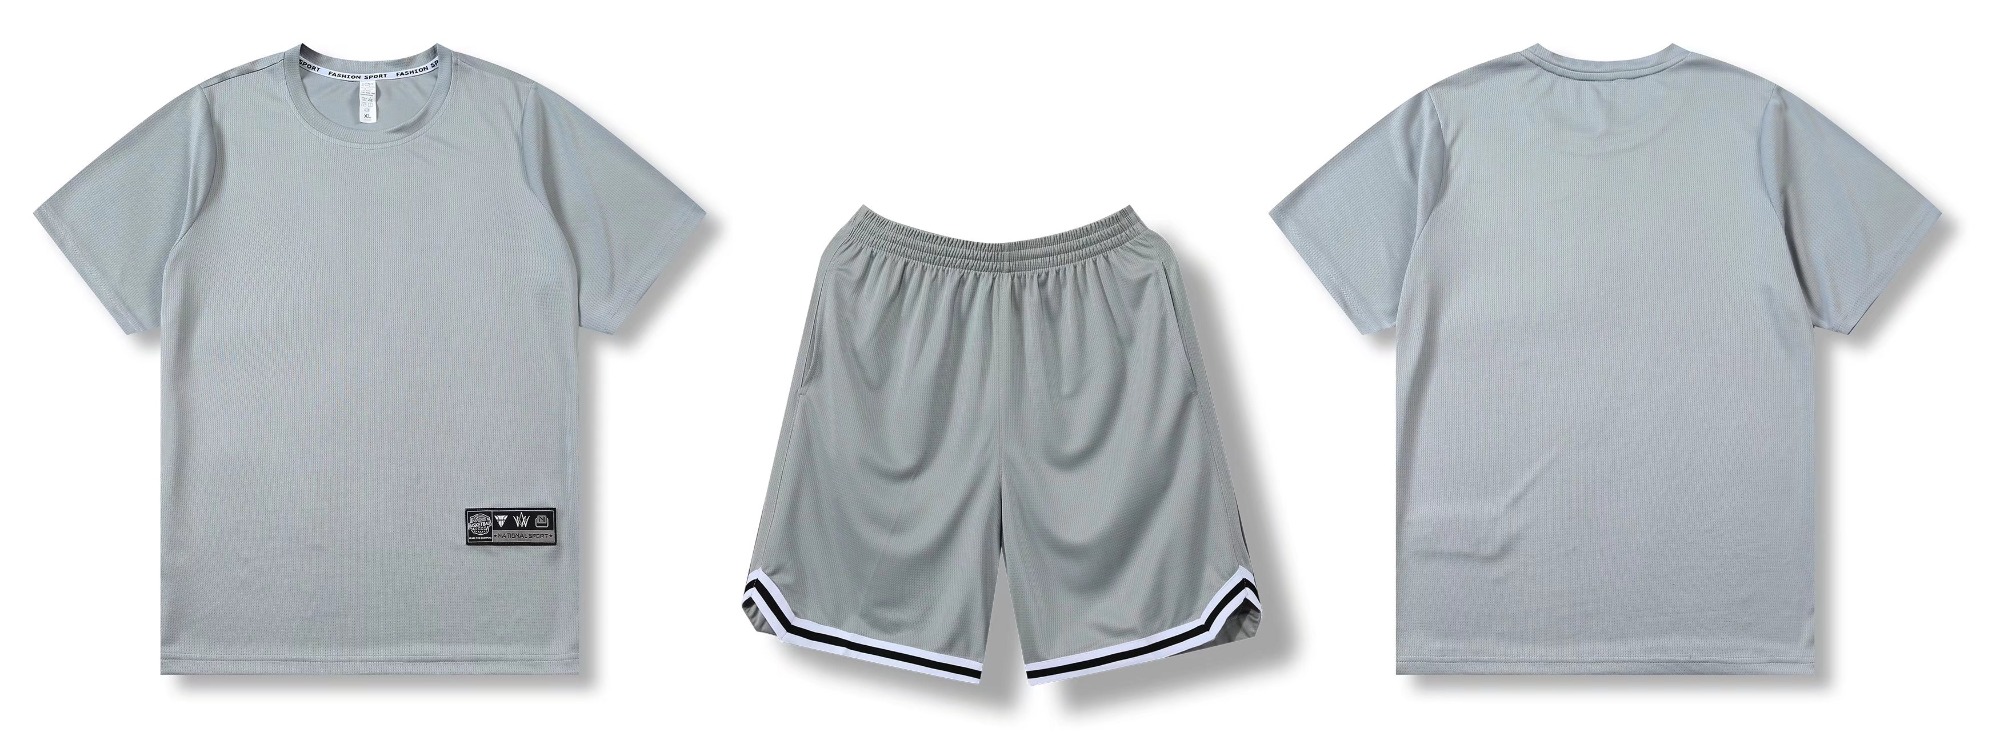 Popular Design Fashion Sportswear Sports Gray Activewear Casual Uniform-YW